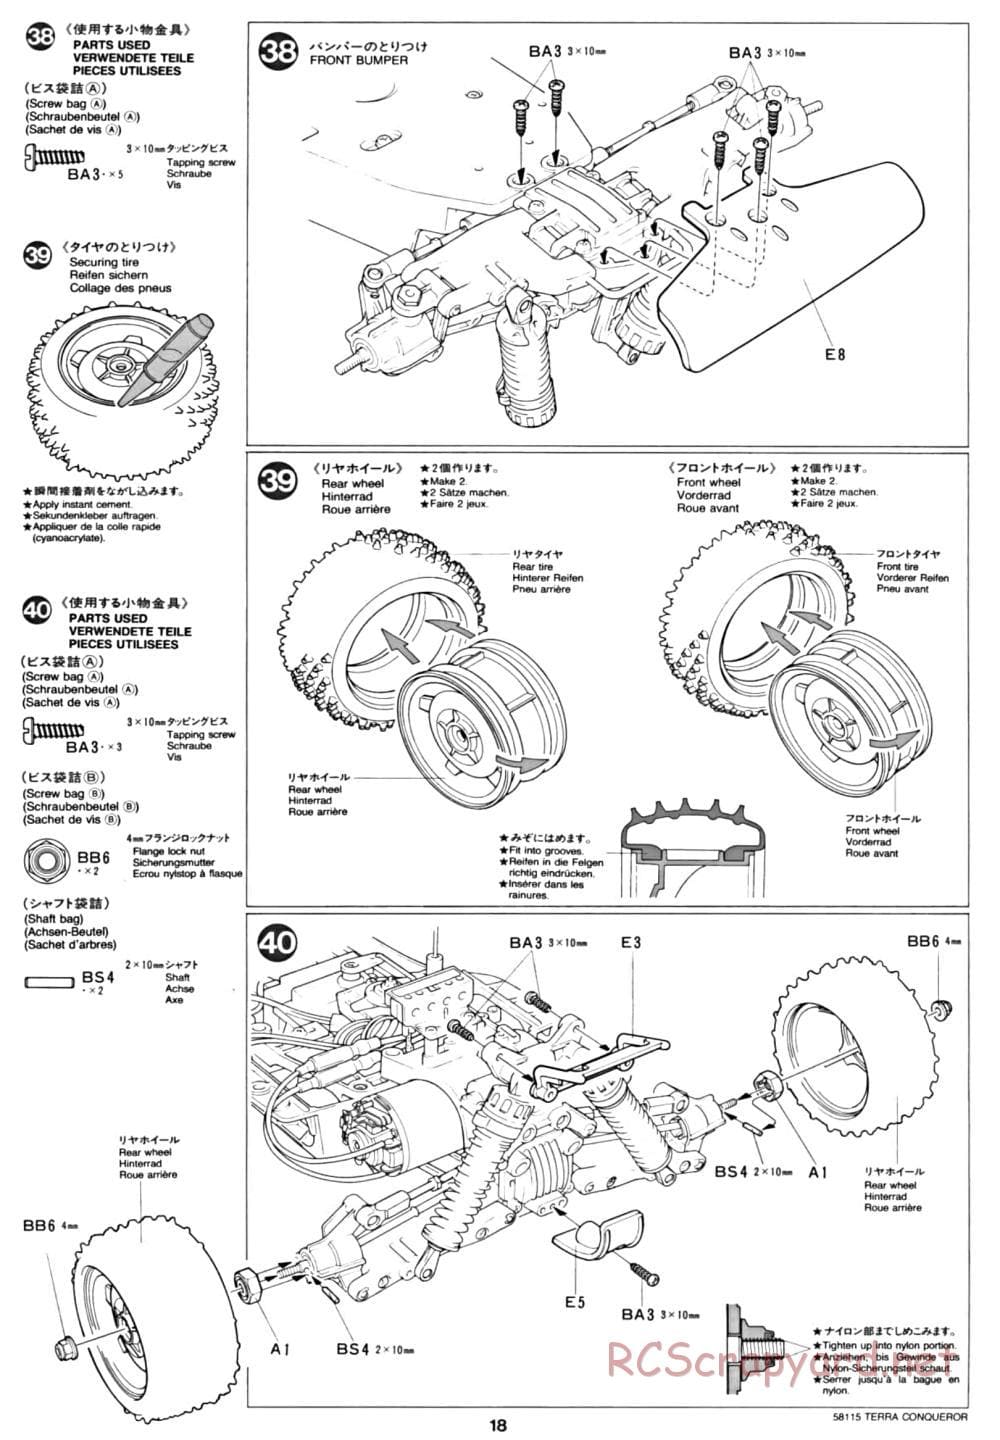 Tamiya - Terra Conqueror Chassis - Manual - Page 18